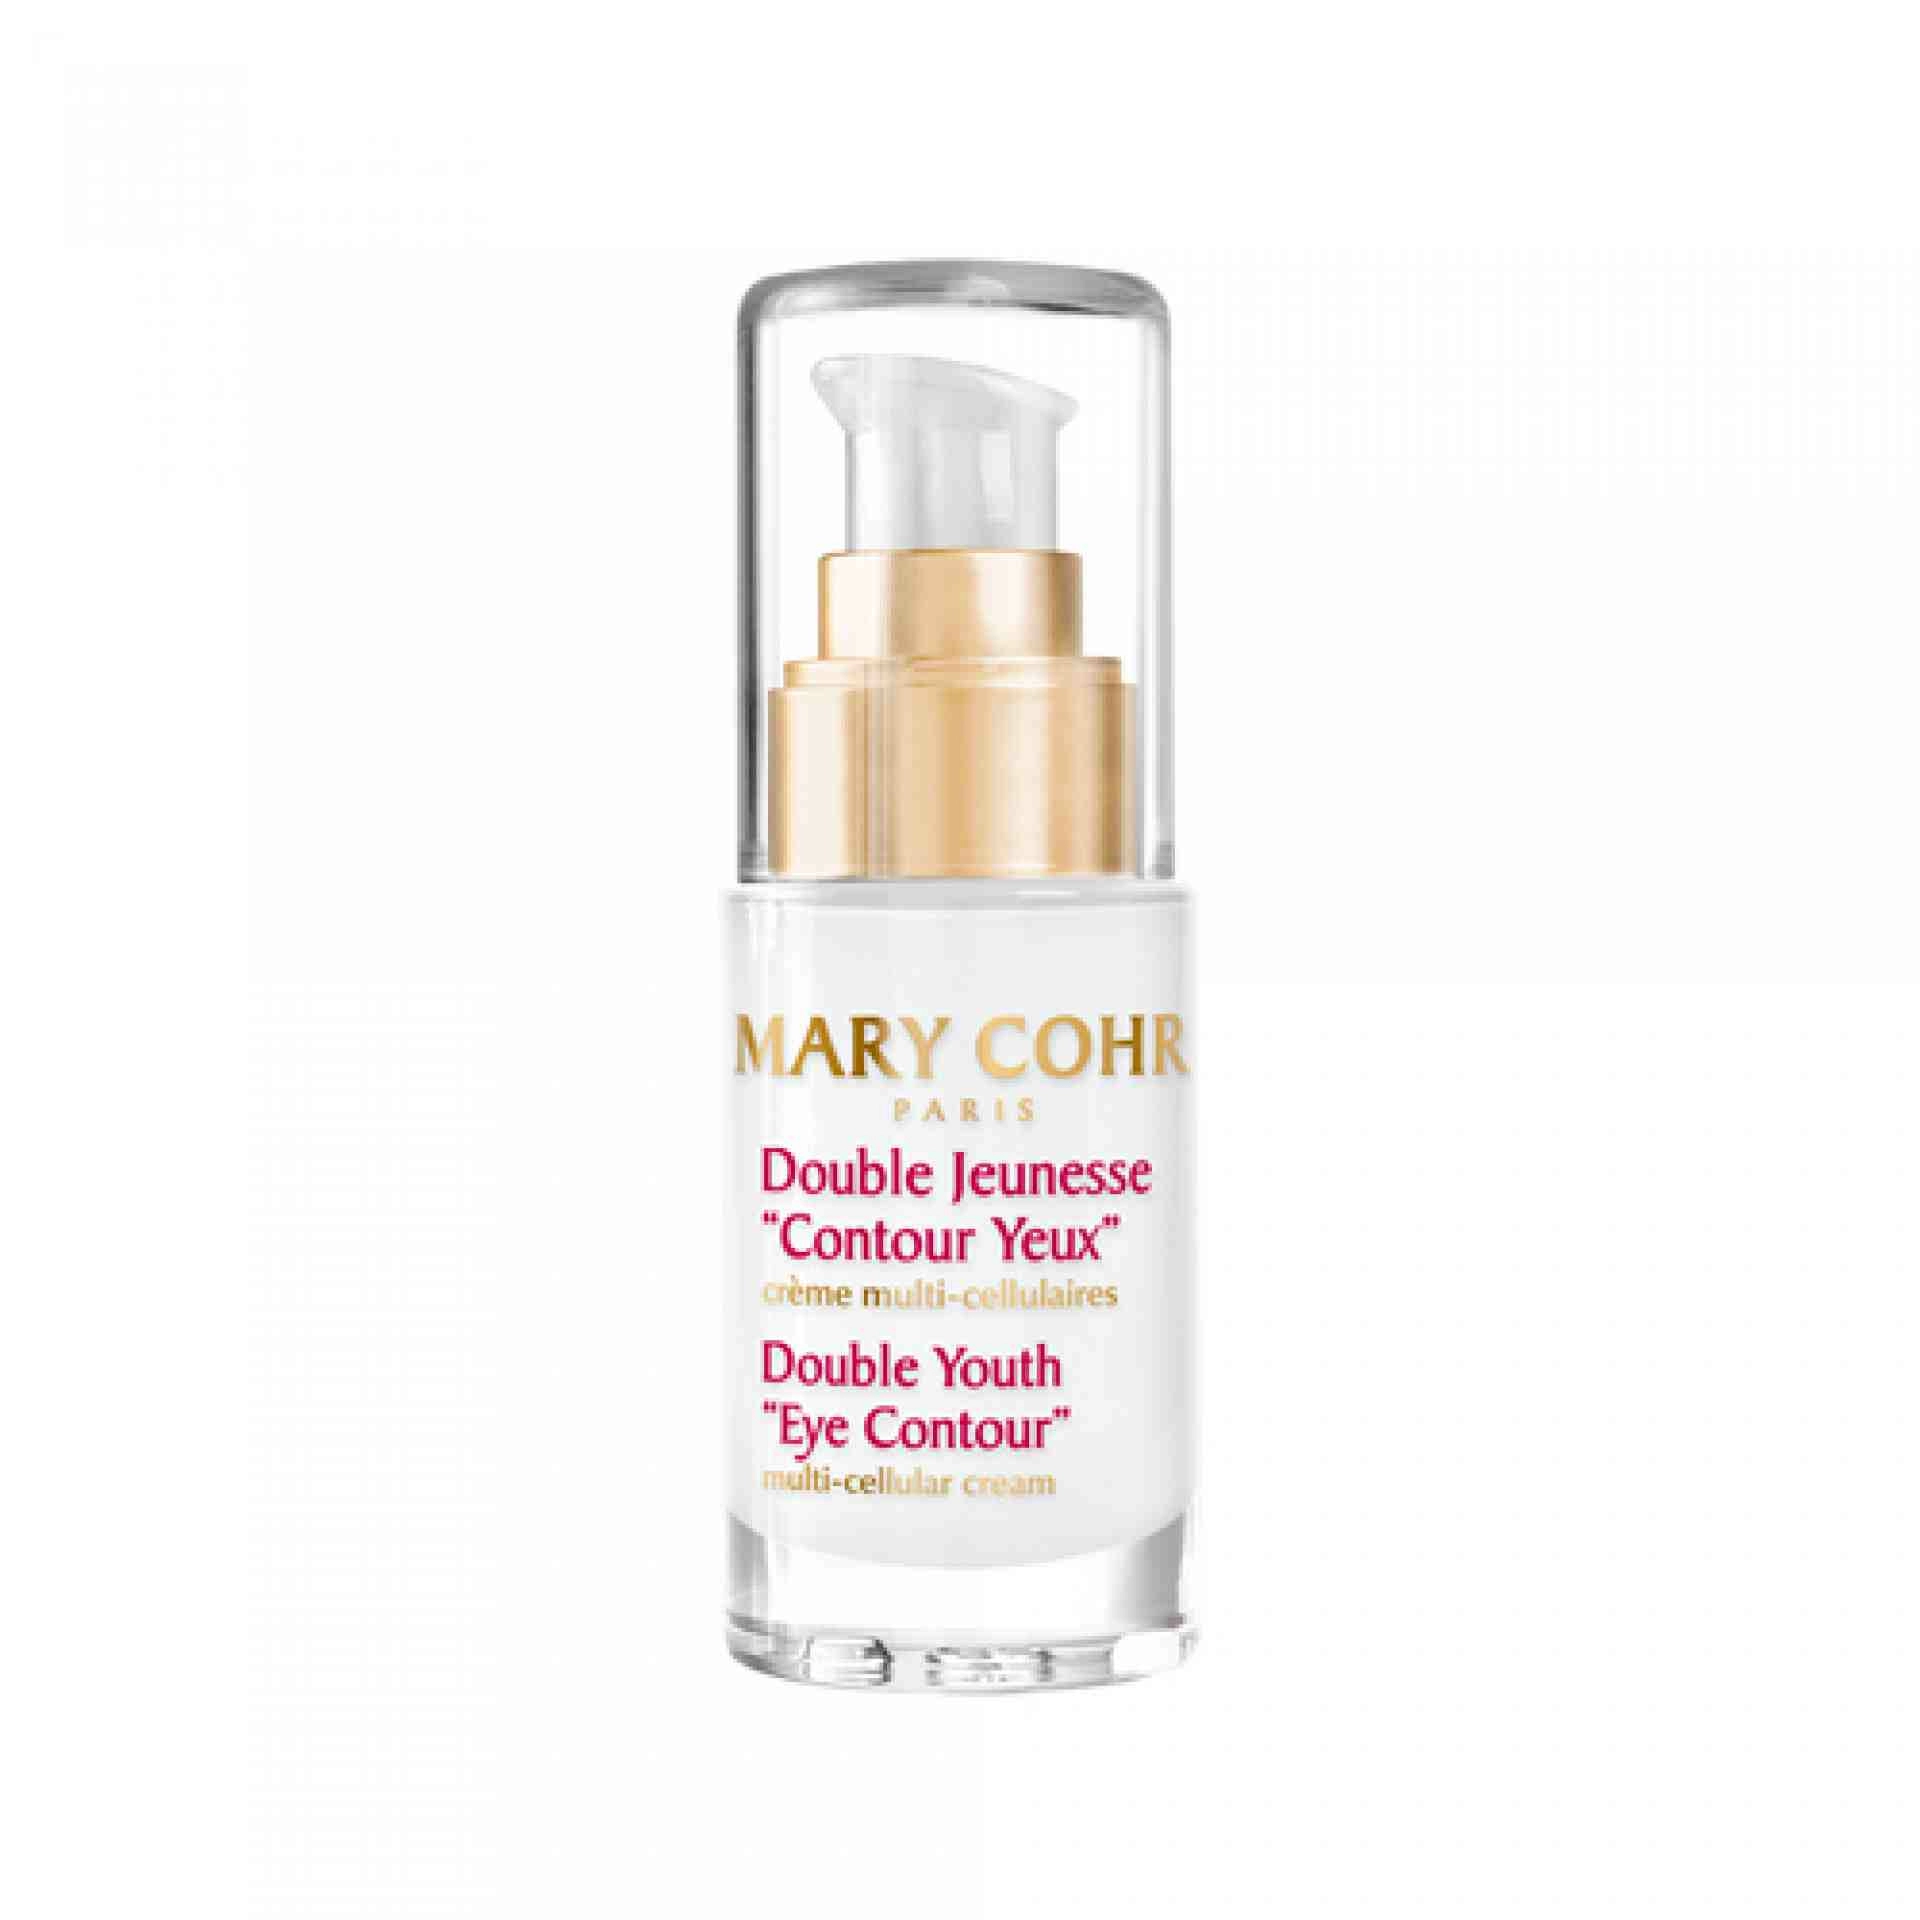 Double Jeunesse “Contour Yeux” I Contorno de Ojos Multicelular 15ml - Mary Cohr ®